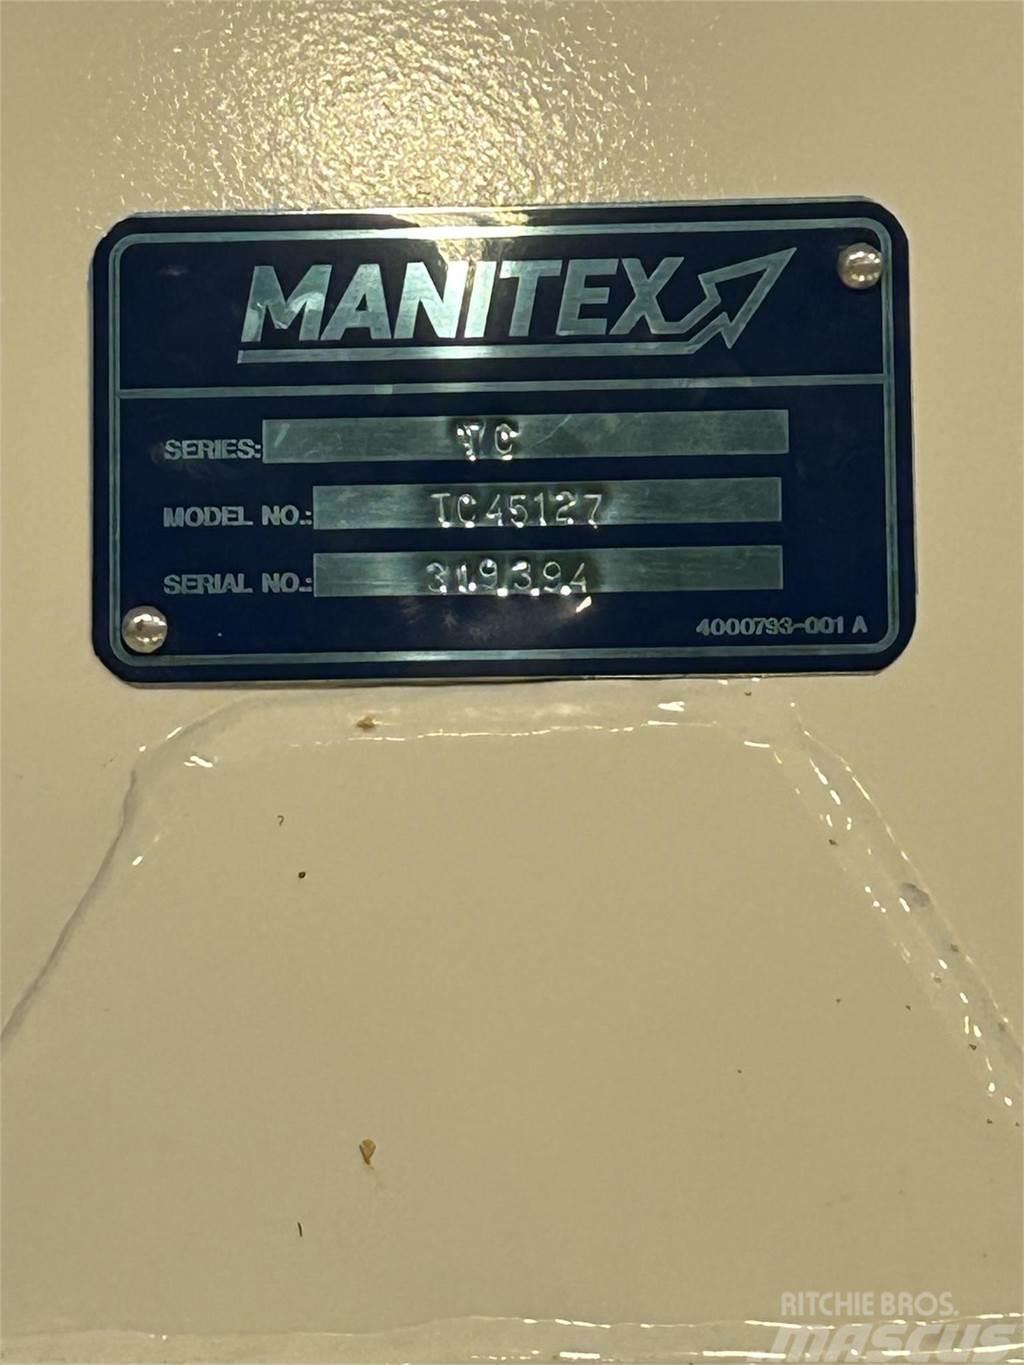 Manitex TC45127 Camiones grúa